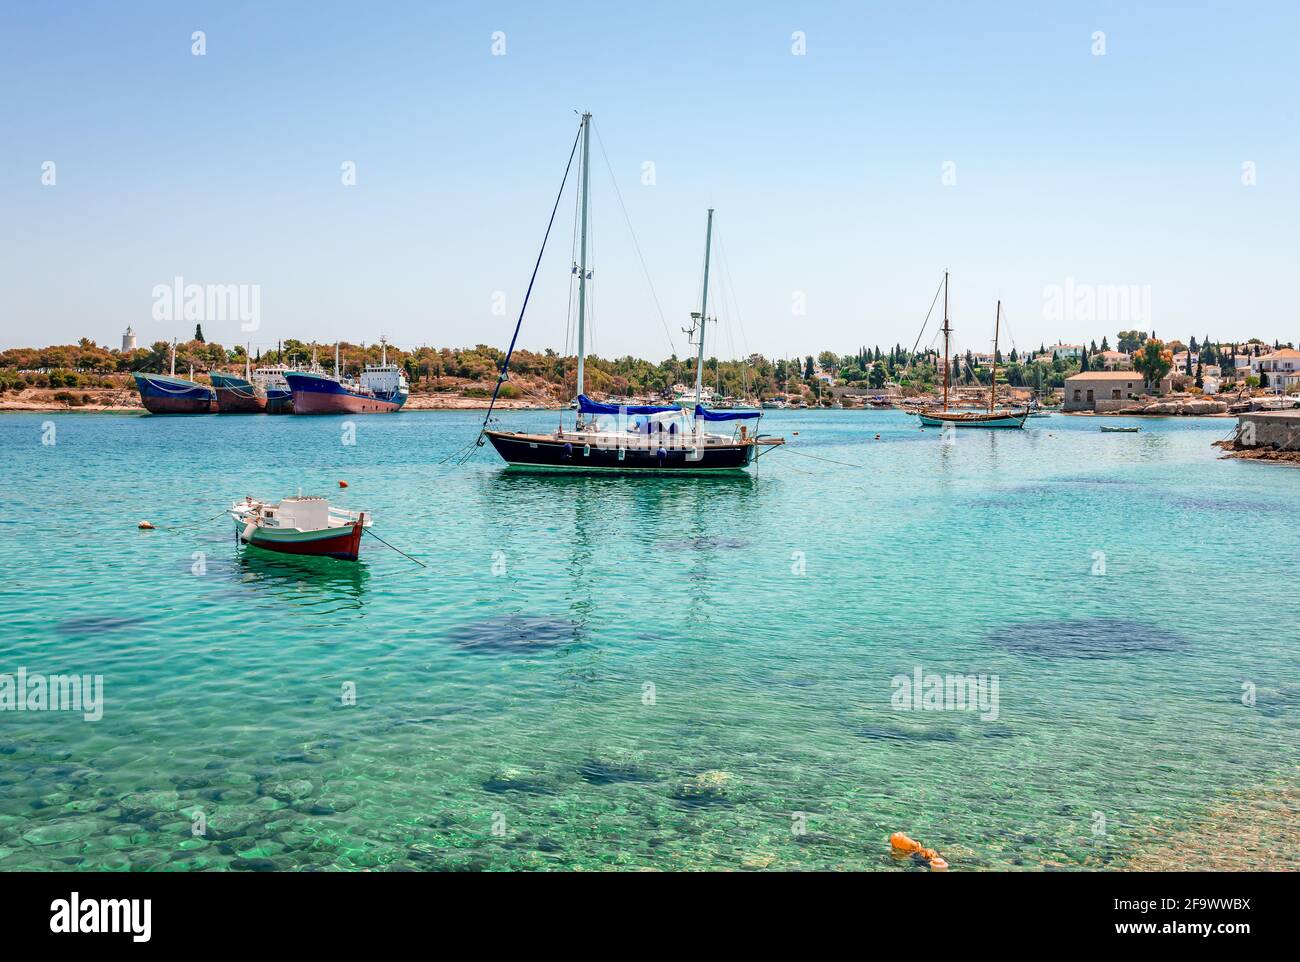 El puerto y el antiguo astillero en Spetses, Grecia. Spetches es una pequeña isla pintoresca en el golfo Sarónico. Foto de stock